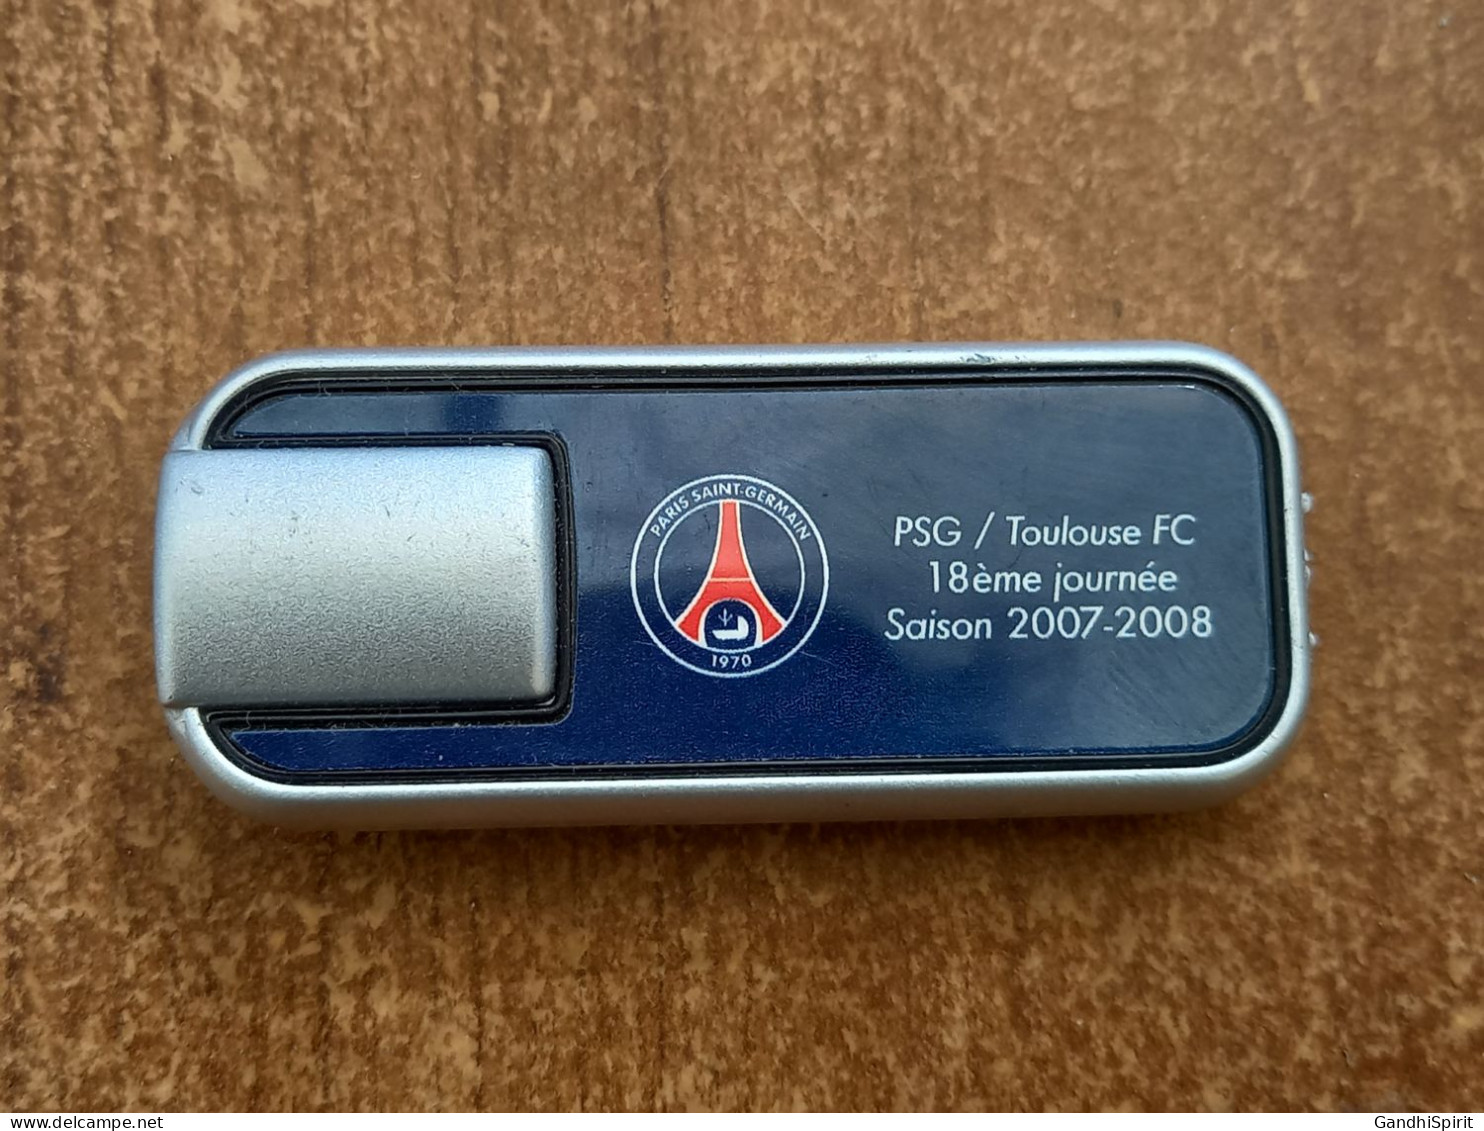 PSG Paris Saint Germain / Toulouse FC 2007-2008 Laser Ou Petite Lampe De Poche - Habillement, Souvenirs & Autres